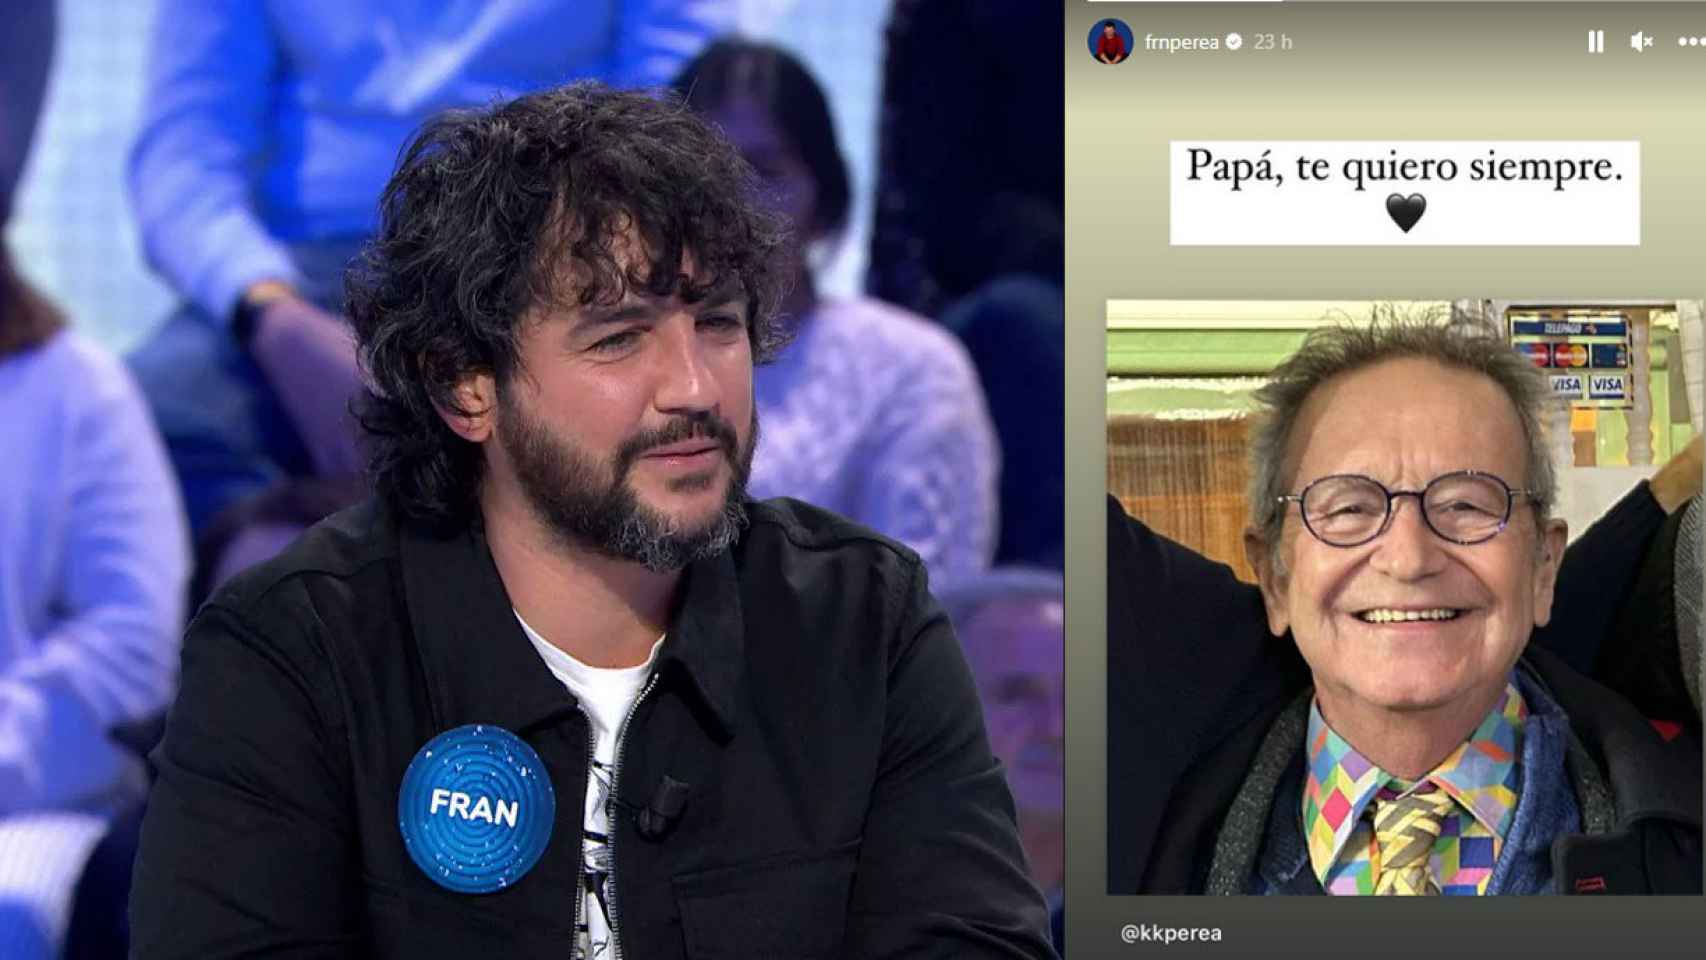 El varapalo de Fran Perea: muere su padre en su mejor momento profesional y  televisivo